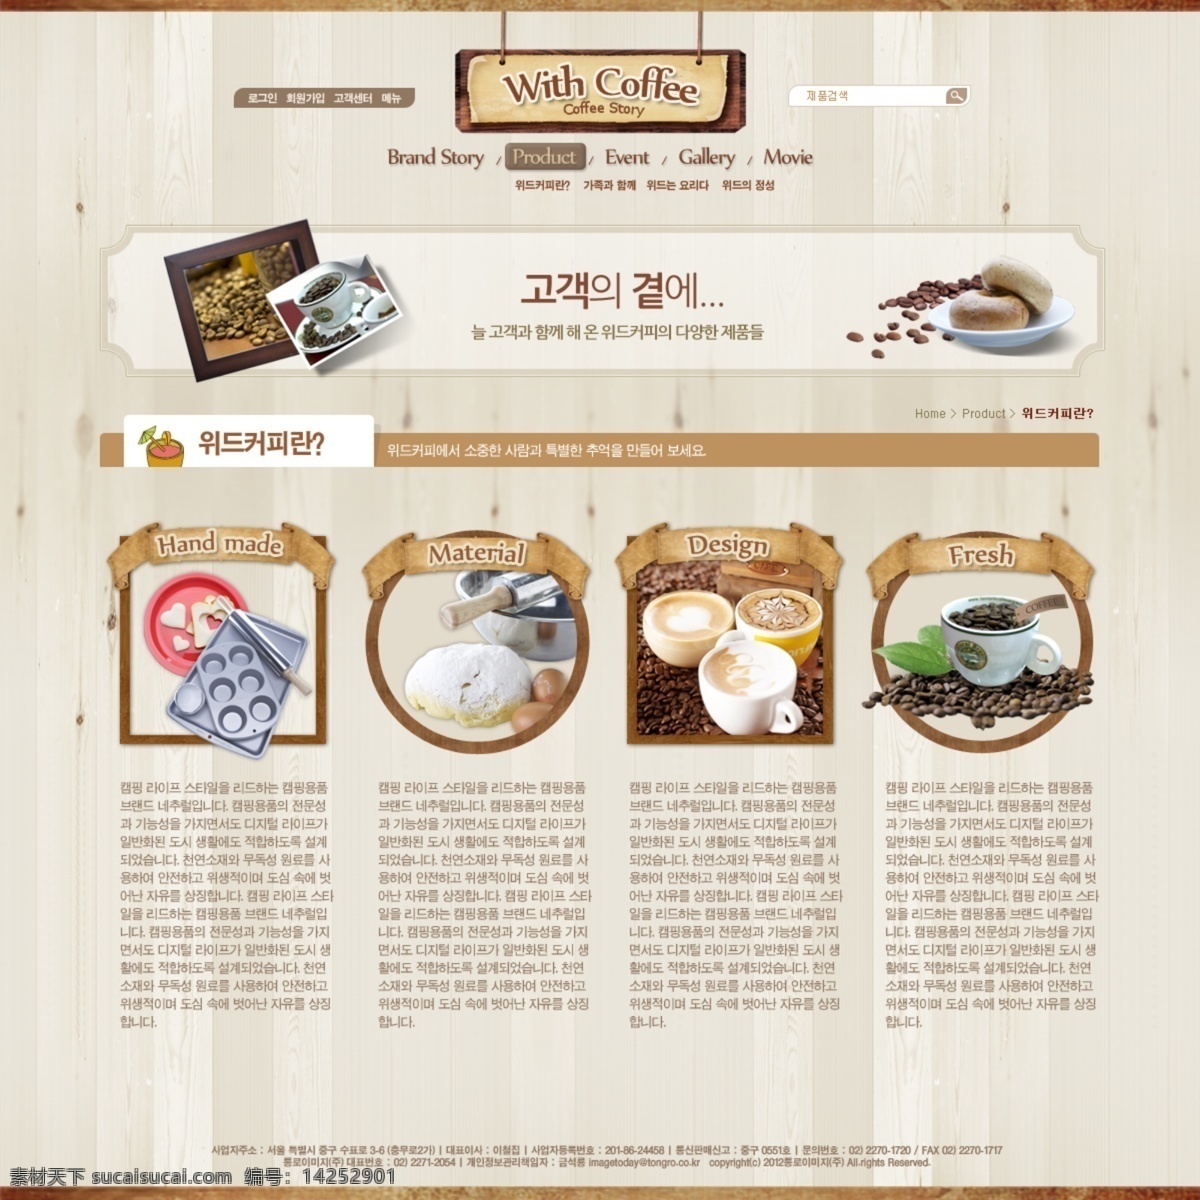 咖啡 网站 网页模板 韩国网站 外国网站 网页模板素材 网站模板 网页设计 韩国 网页素材